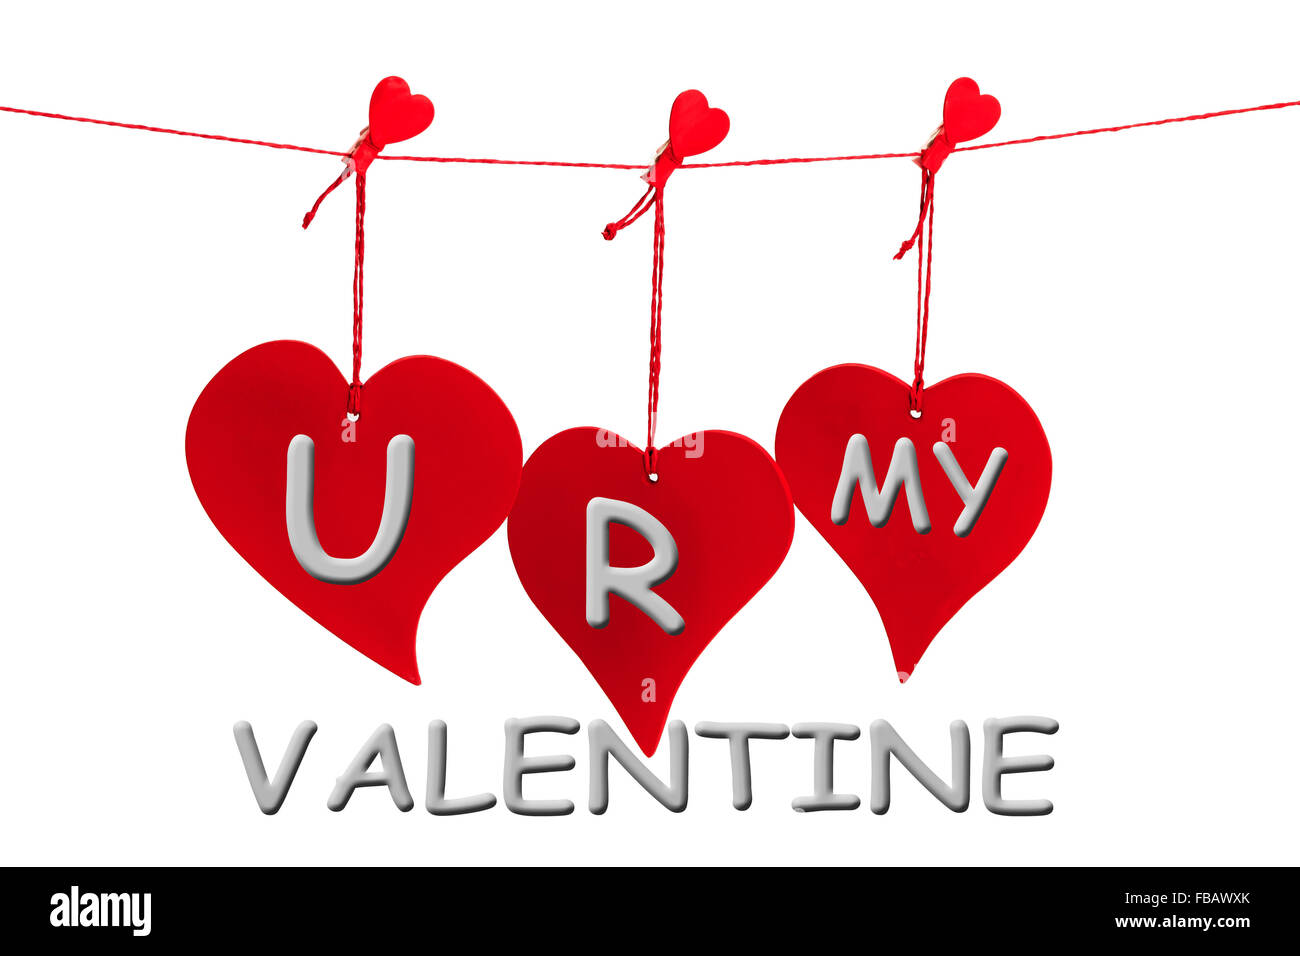 Drei rote Herzen mit U R MY VALENTINE Text grau isoliert auf weißem Hintergrund hängen Stockfoto